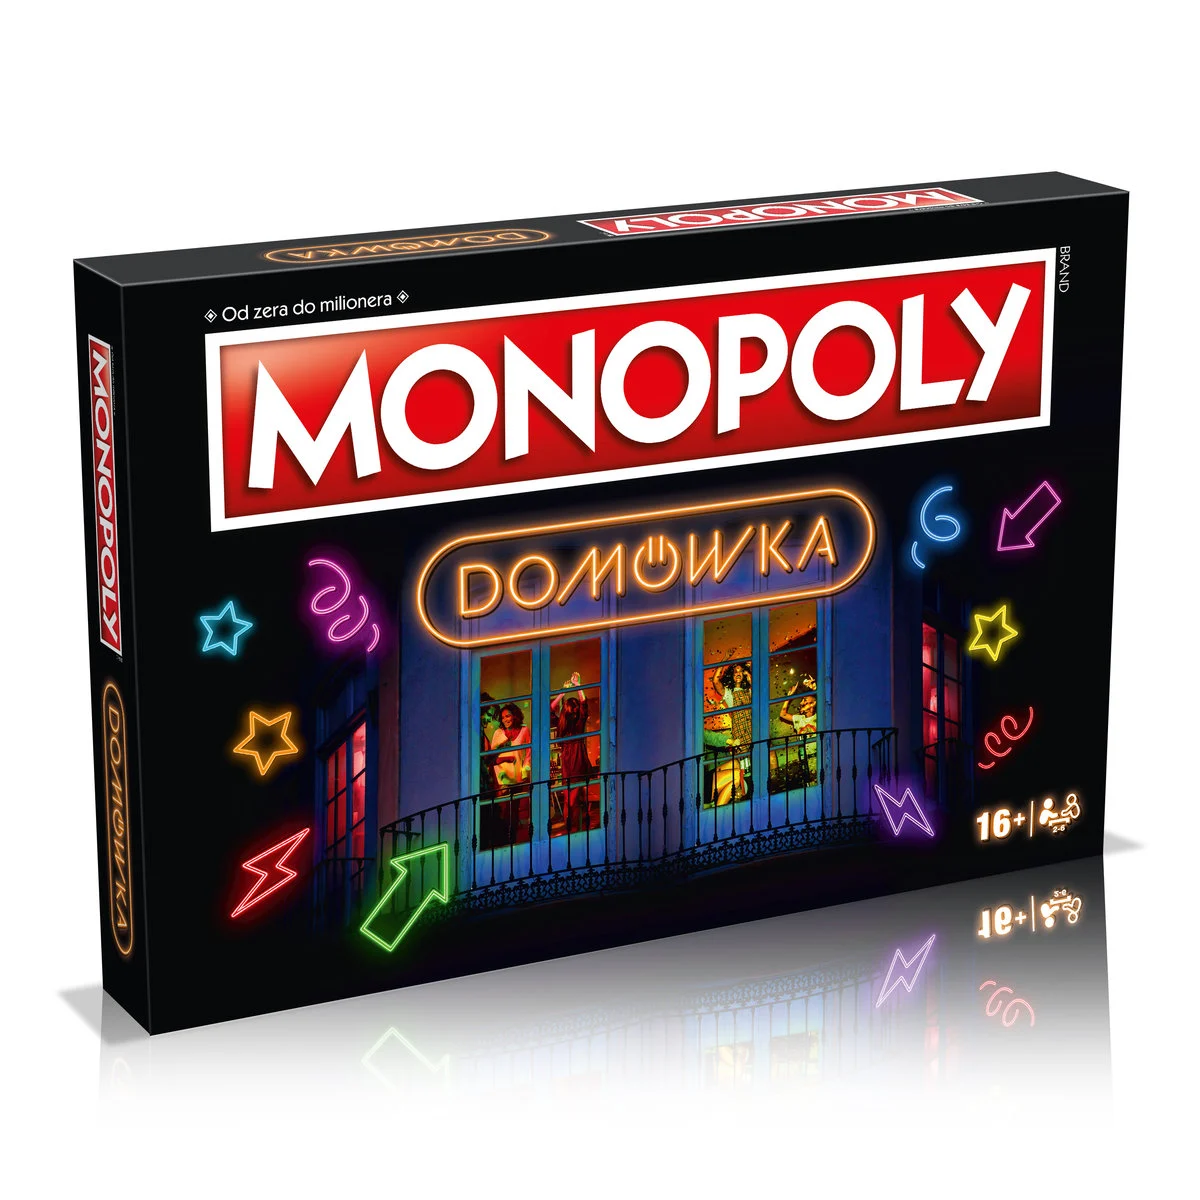 Gra towarzyska WINNING GAMES Monopoly Domówka